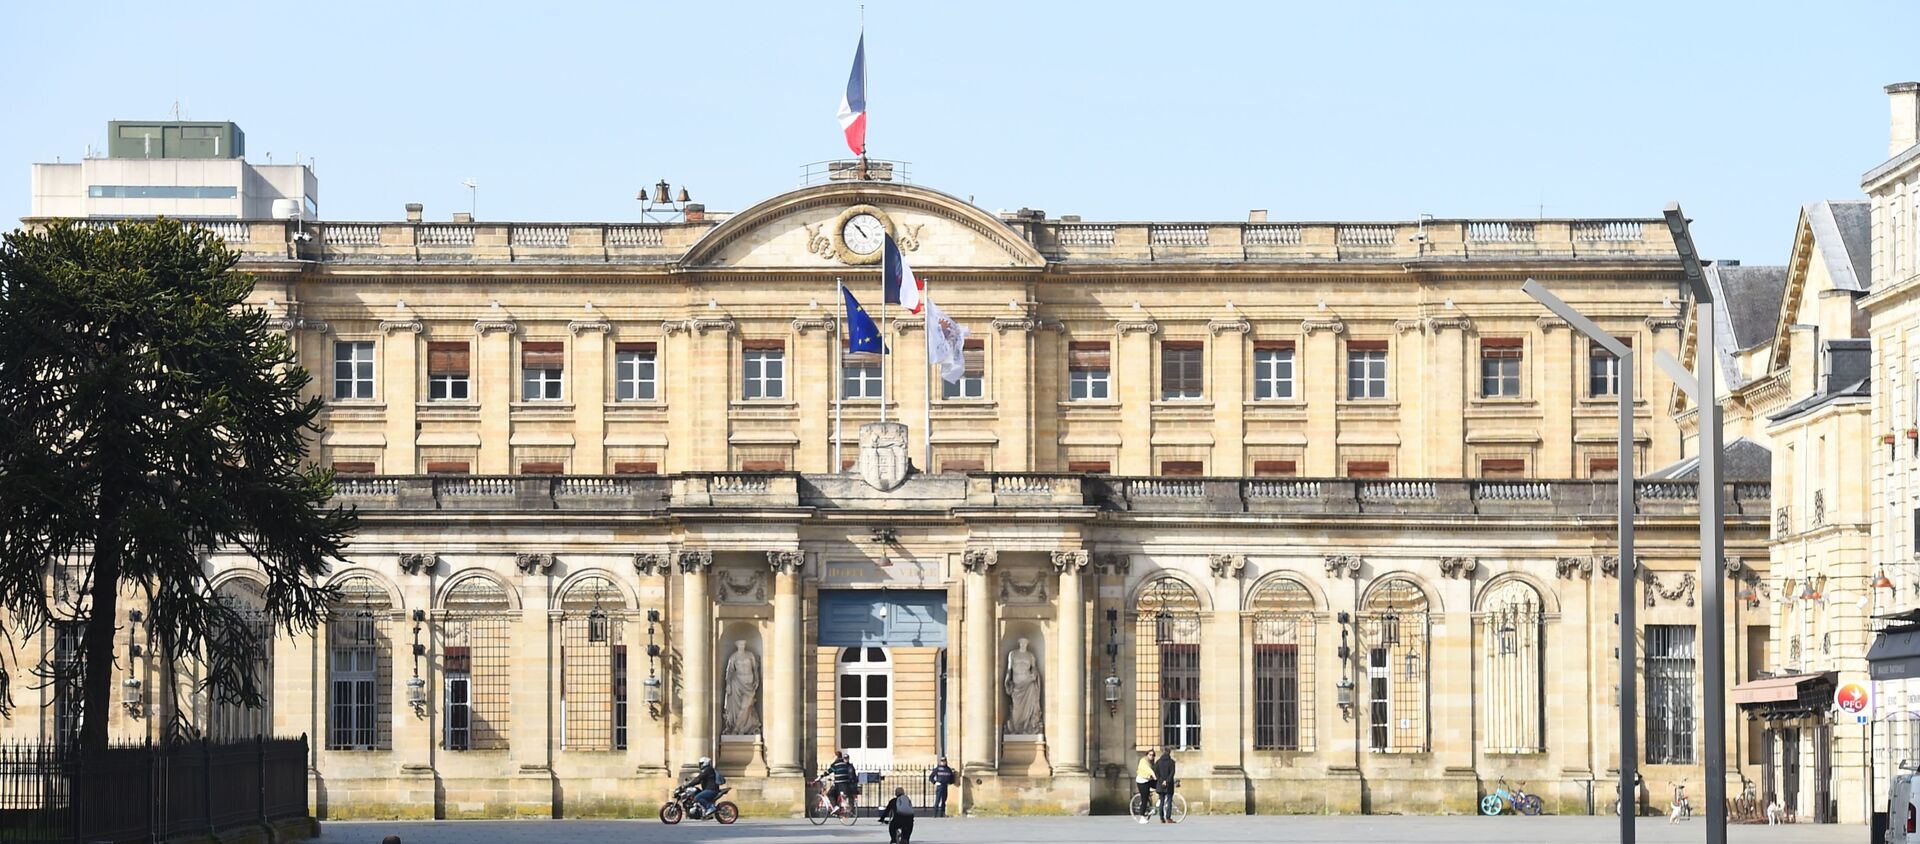 La place de la mairie de Bordeaux déserte pendant le confinement. - Sputnik Afrique, 1920, 03.04.2020